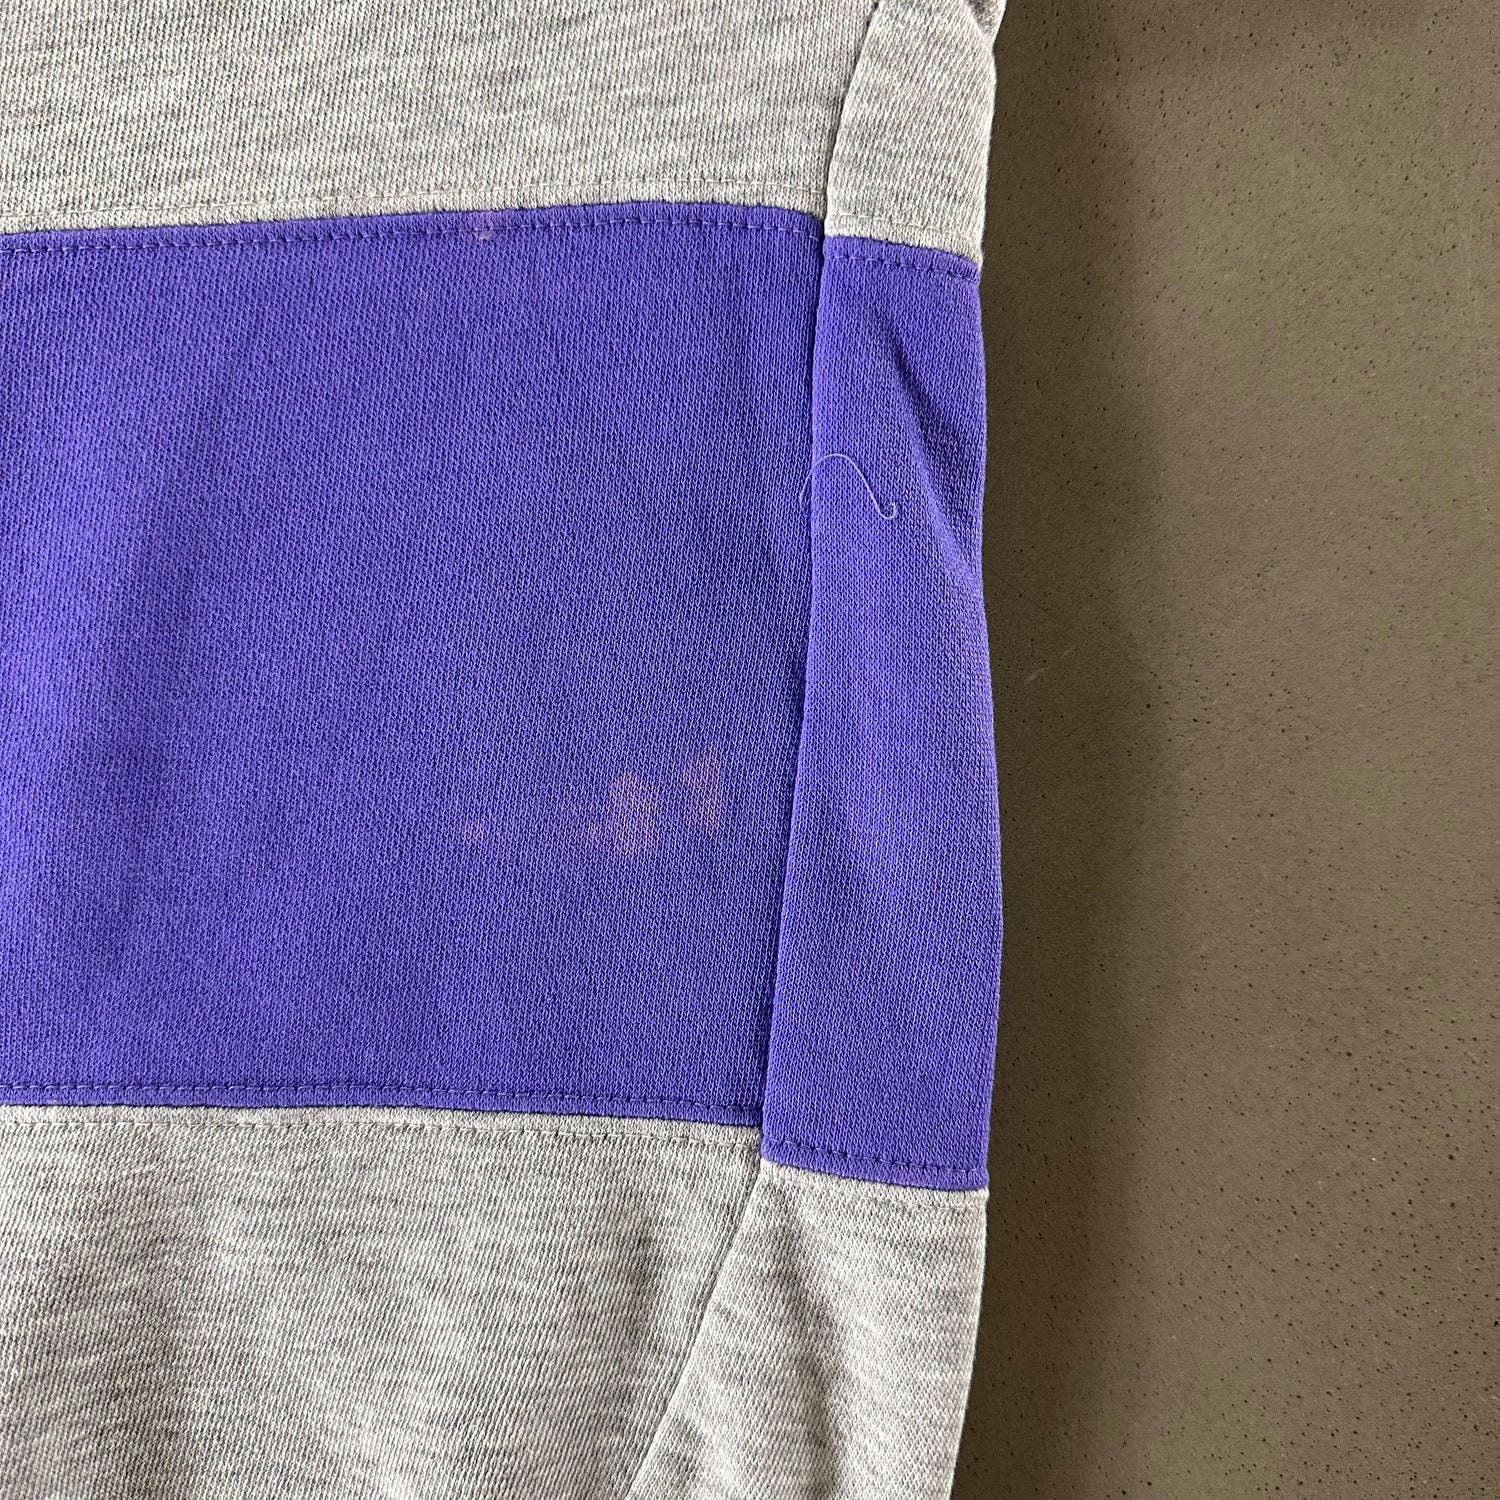 Vintage 1990s Purple Striped Sweatshirt size Medium